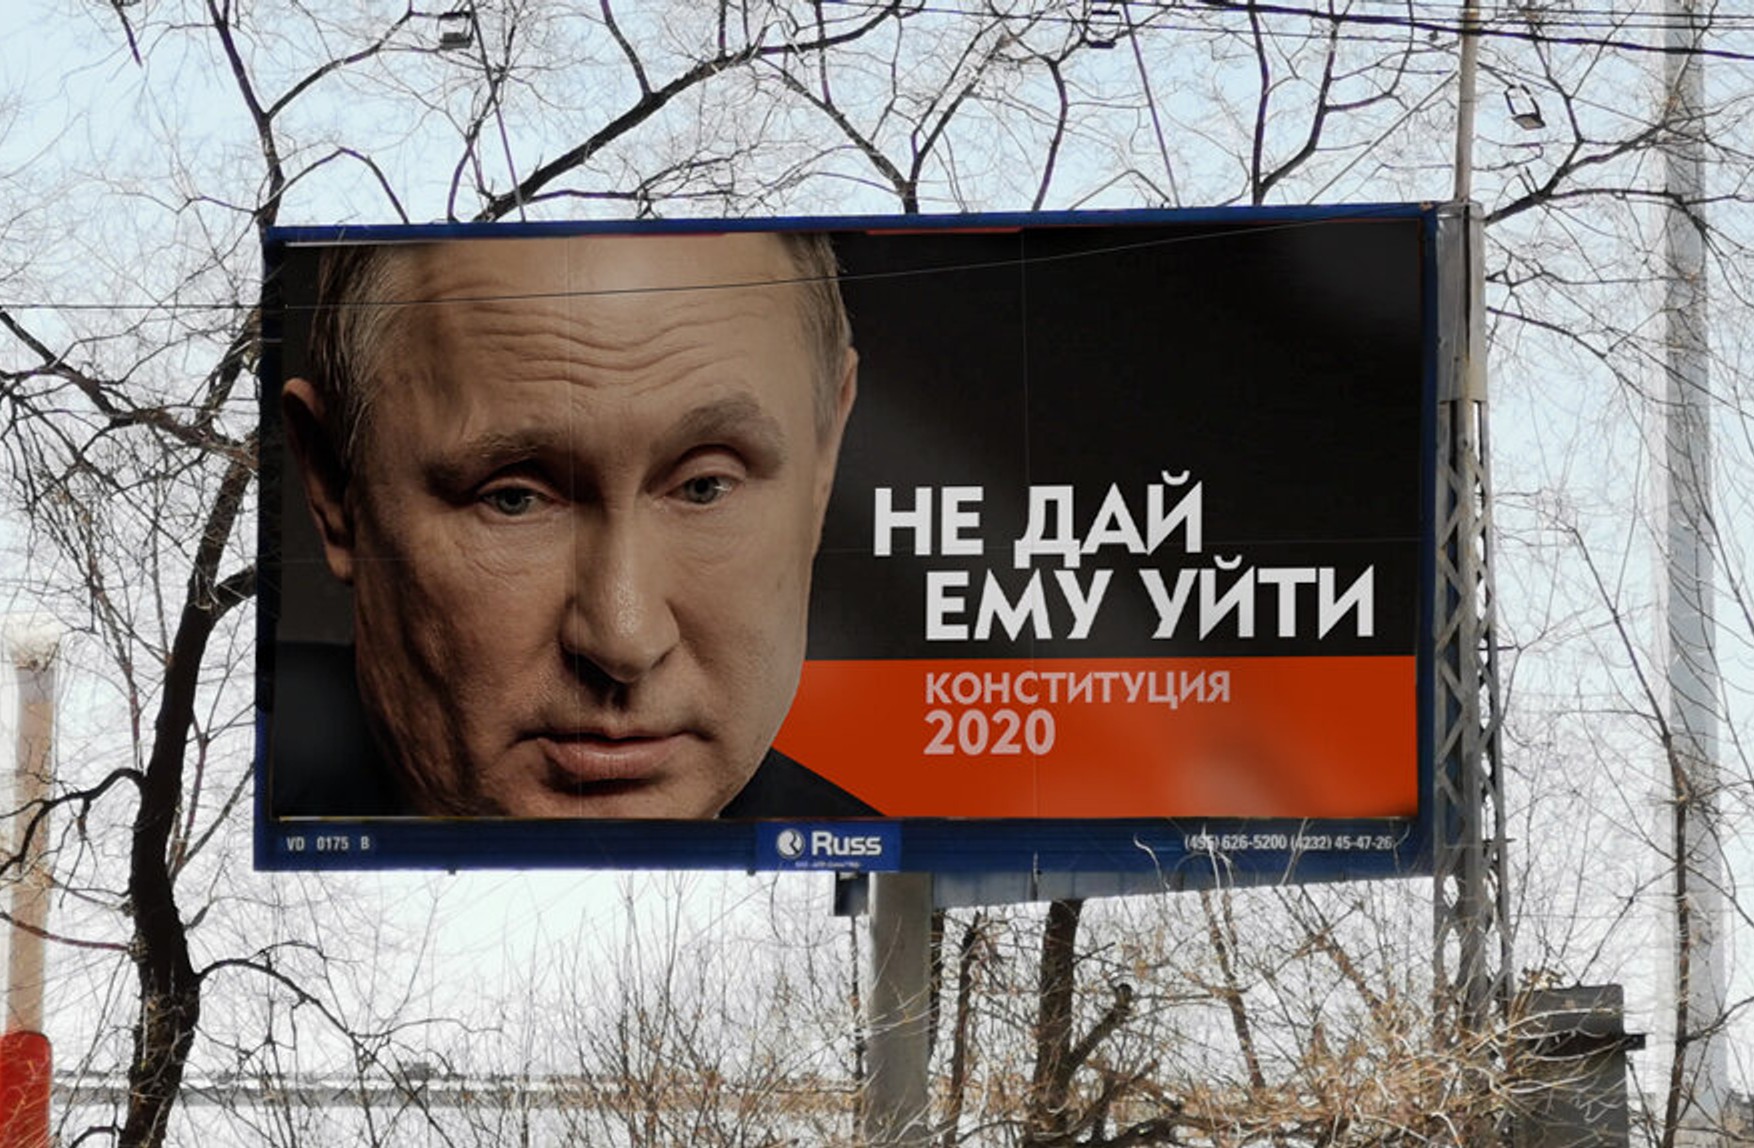 Плакат с Путиным не дай ему уйти